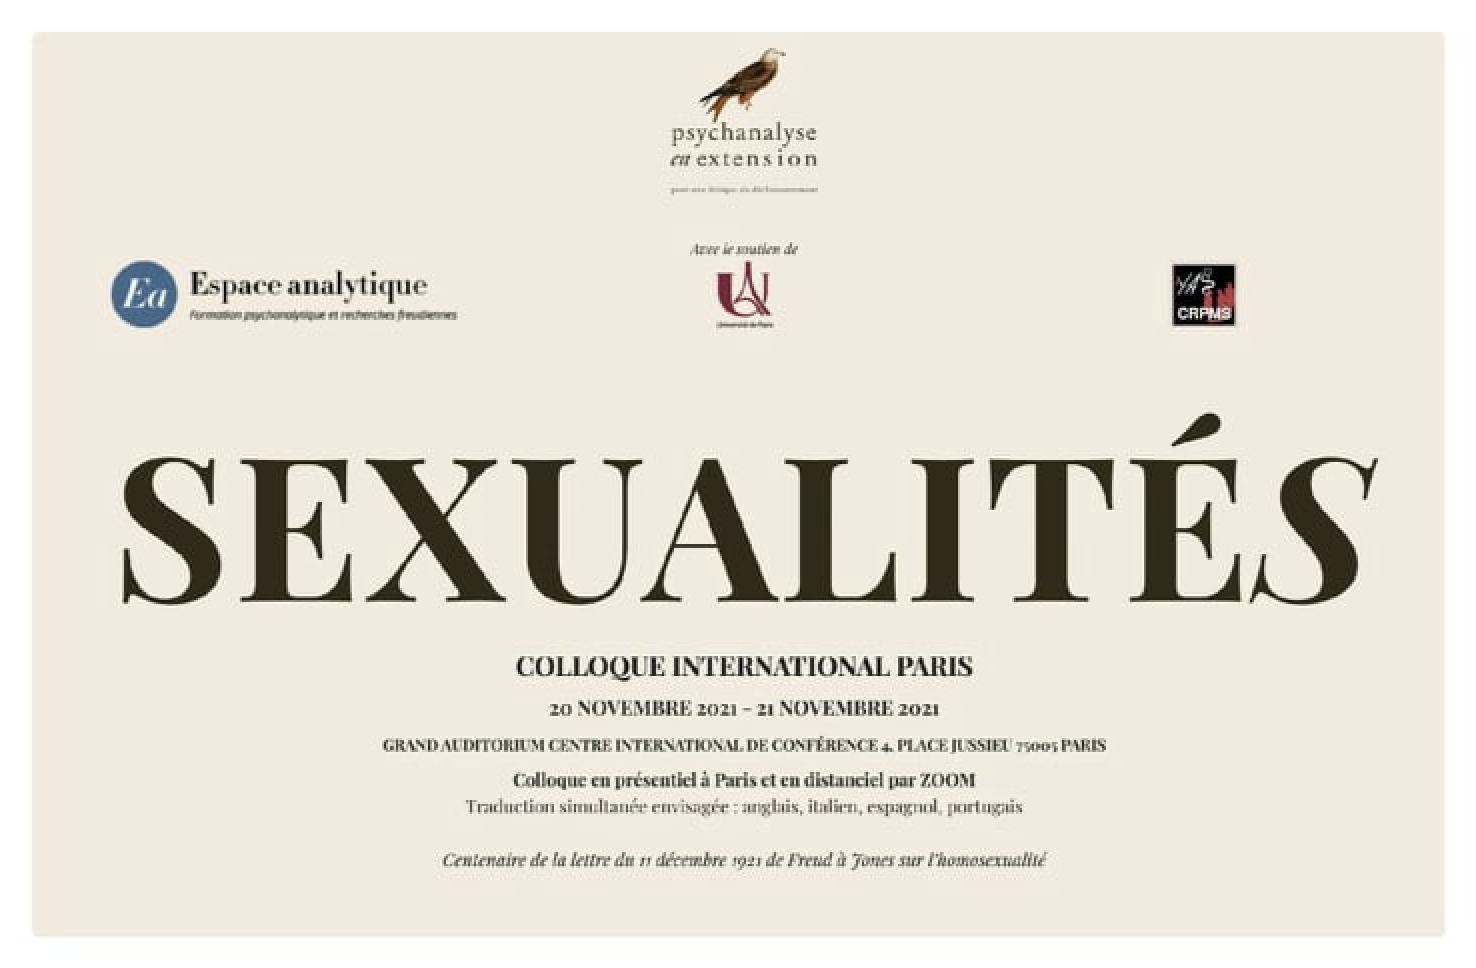 SEXUALITÉ(S) - COLLOQUE INTERNATIONAL PARIS - WE DU 20 NOVEMBRE 2021